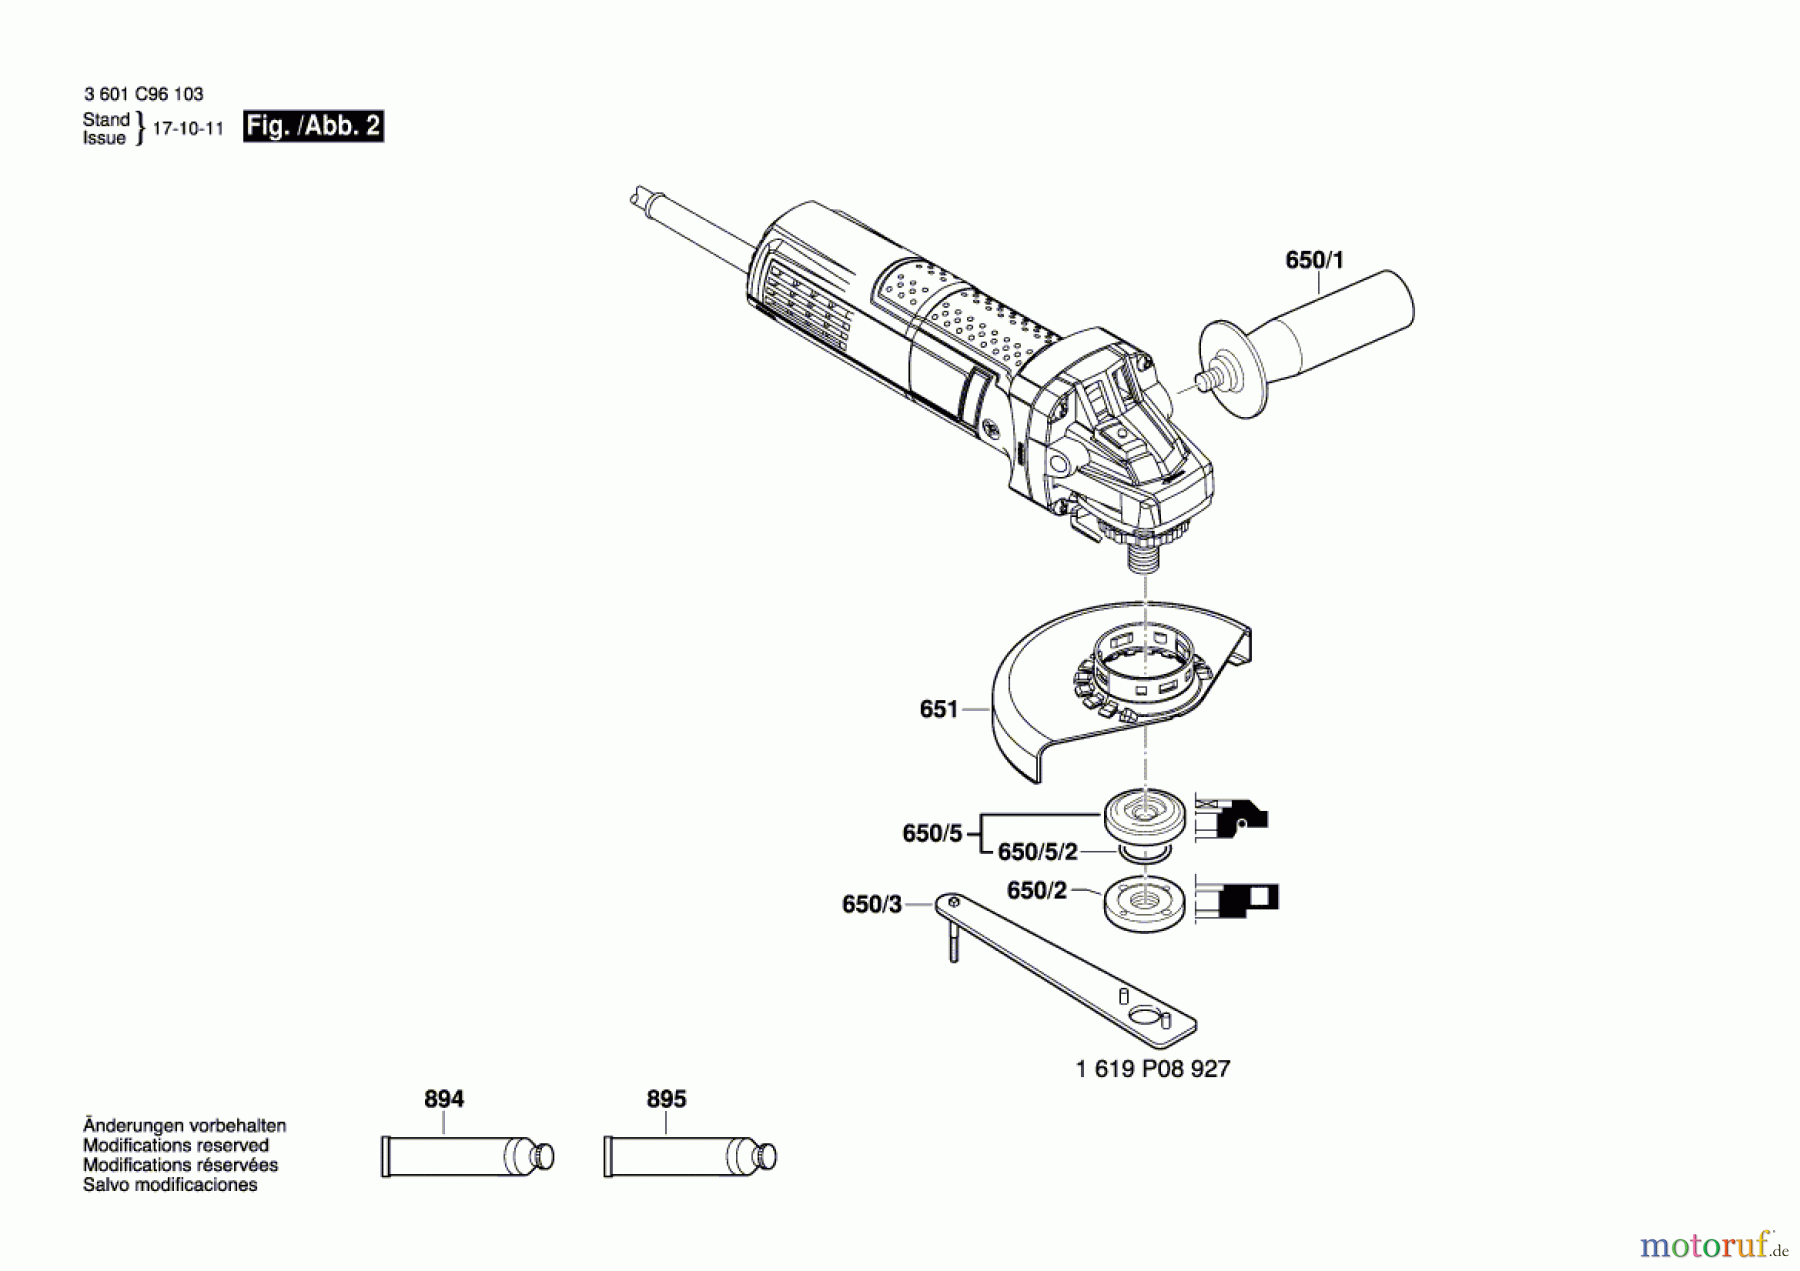  Bosch Werkzeug Winkelschleifer GWS 9-115 S Seite 2